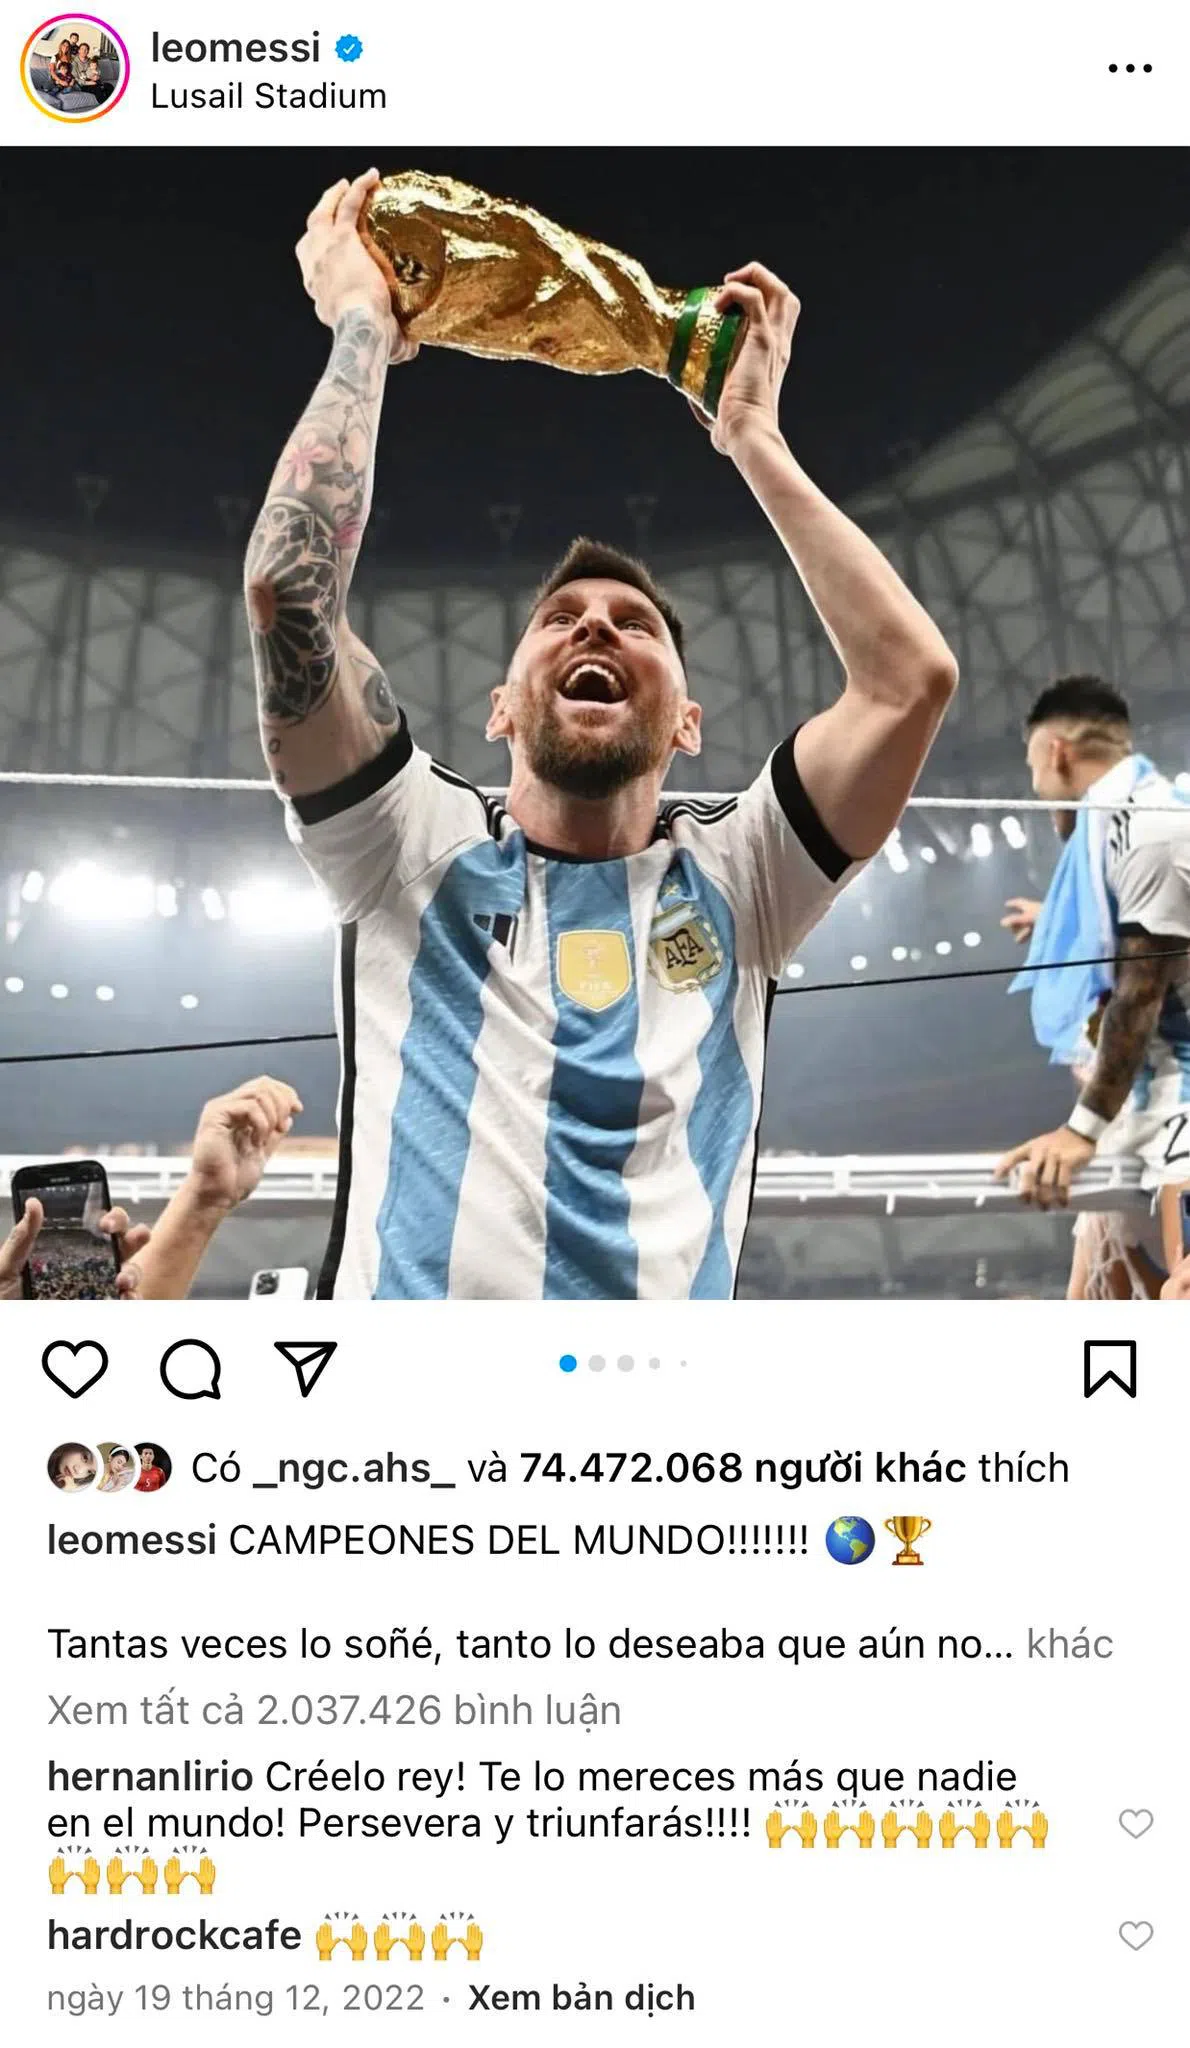 SỐC: Bí mật không ai ngờ tới trong bức ảnh lập kỷ lục trên Instagram của Messi